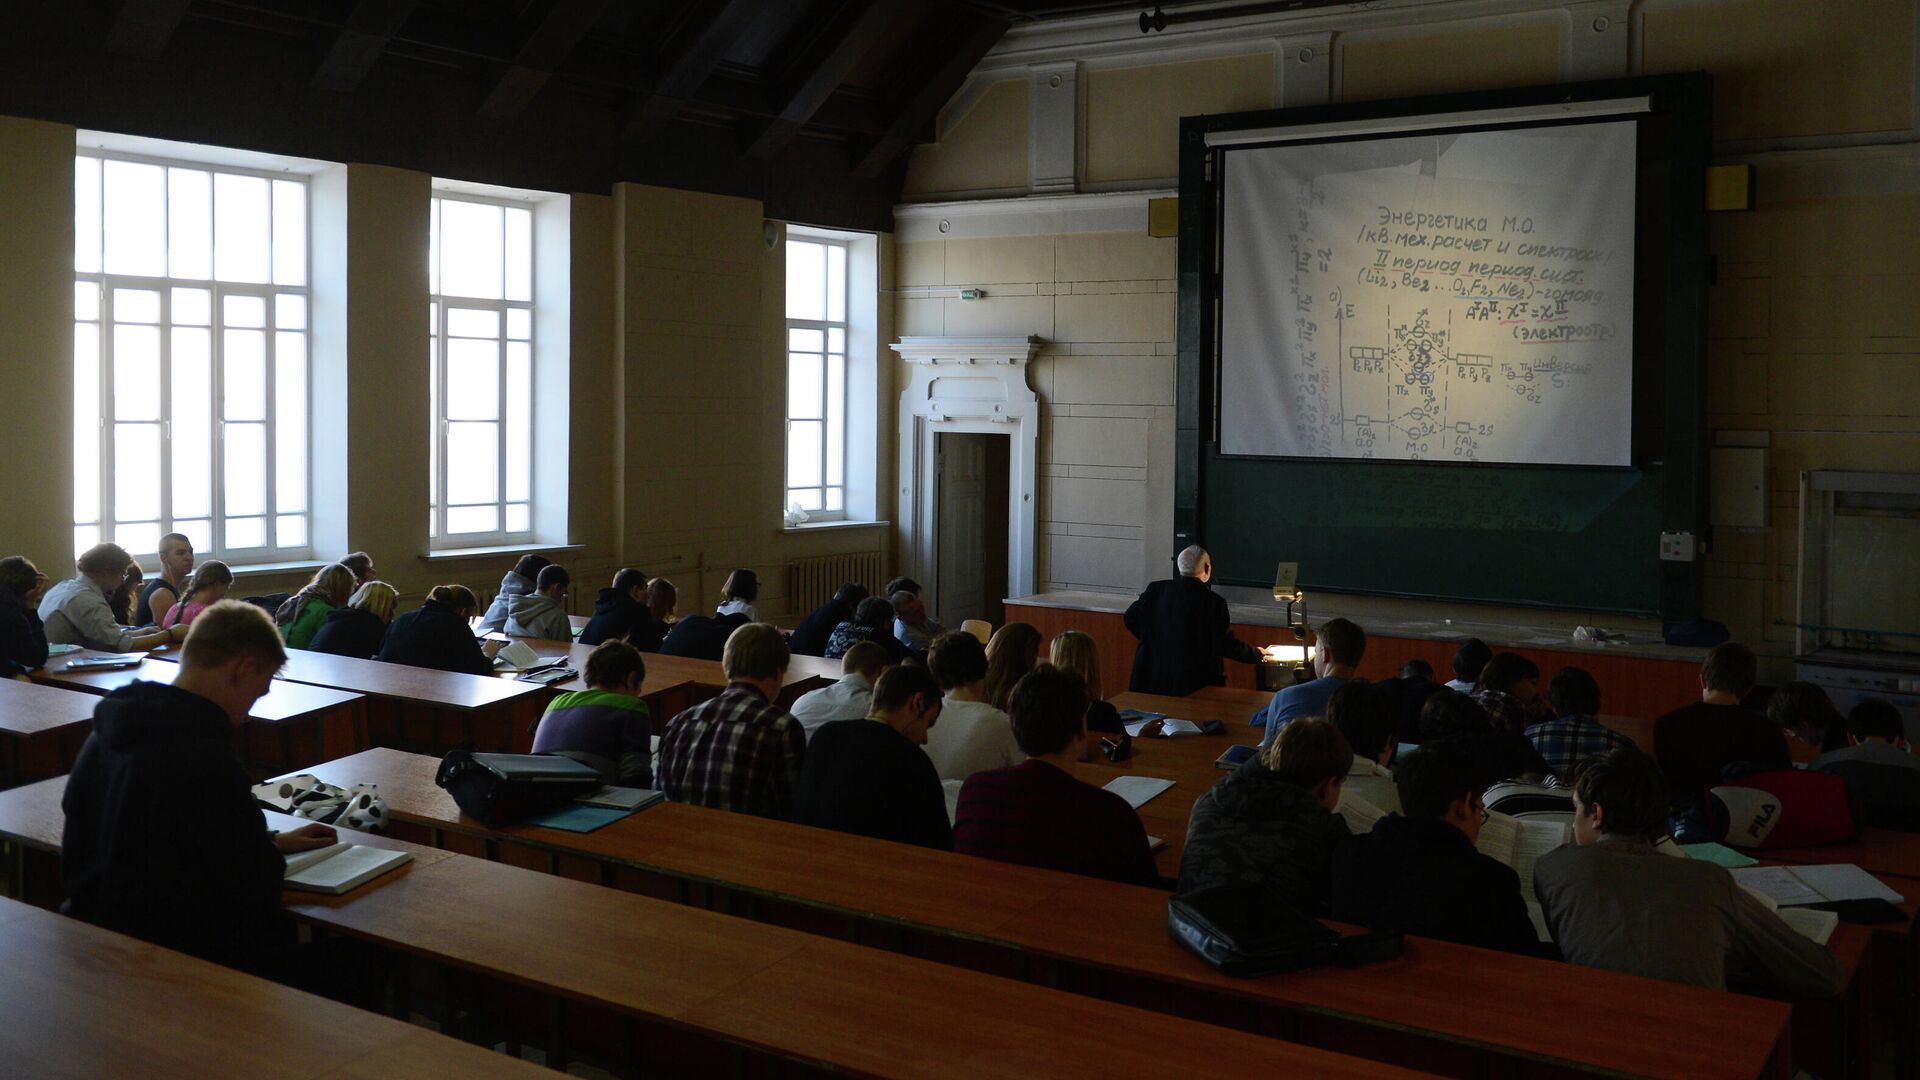 Студенты МГТУ имени Н.Э. Баумана во время лекции в аудитории - РИА Новости, 1920, 30.11.2020